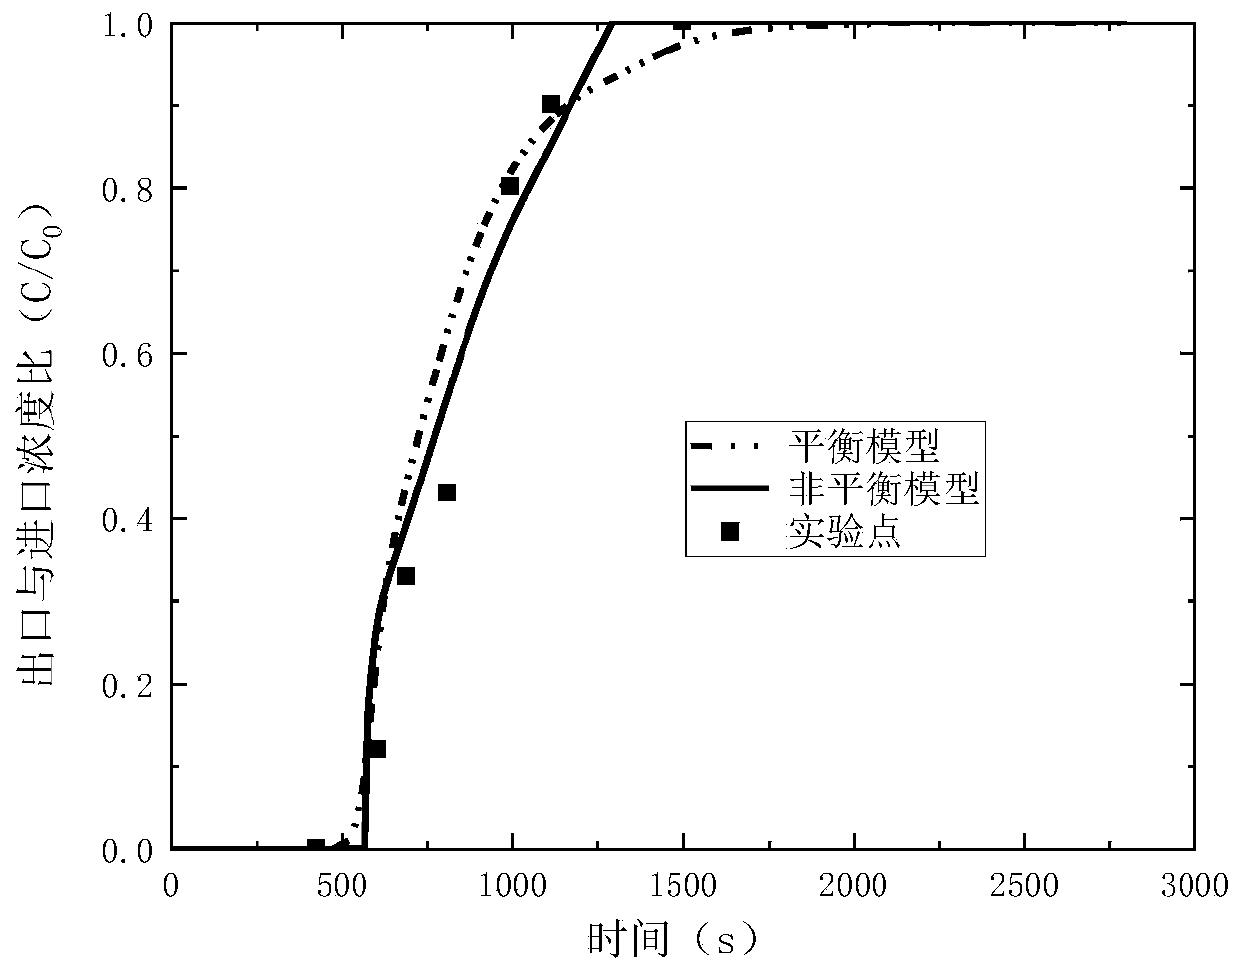 Optimization method for pressure swing adsorption carbon capture based on Fluent software